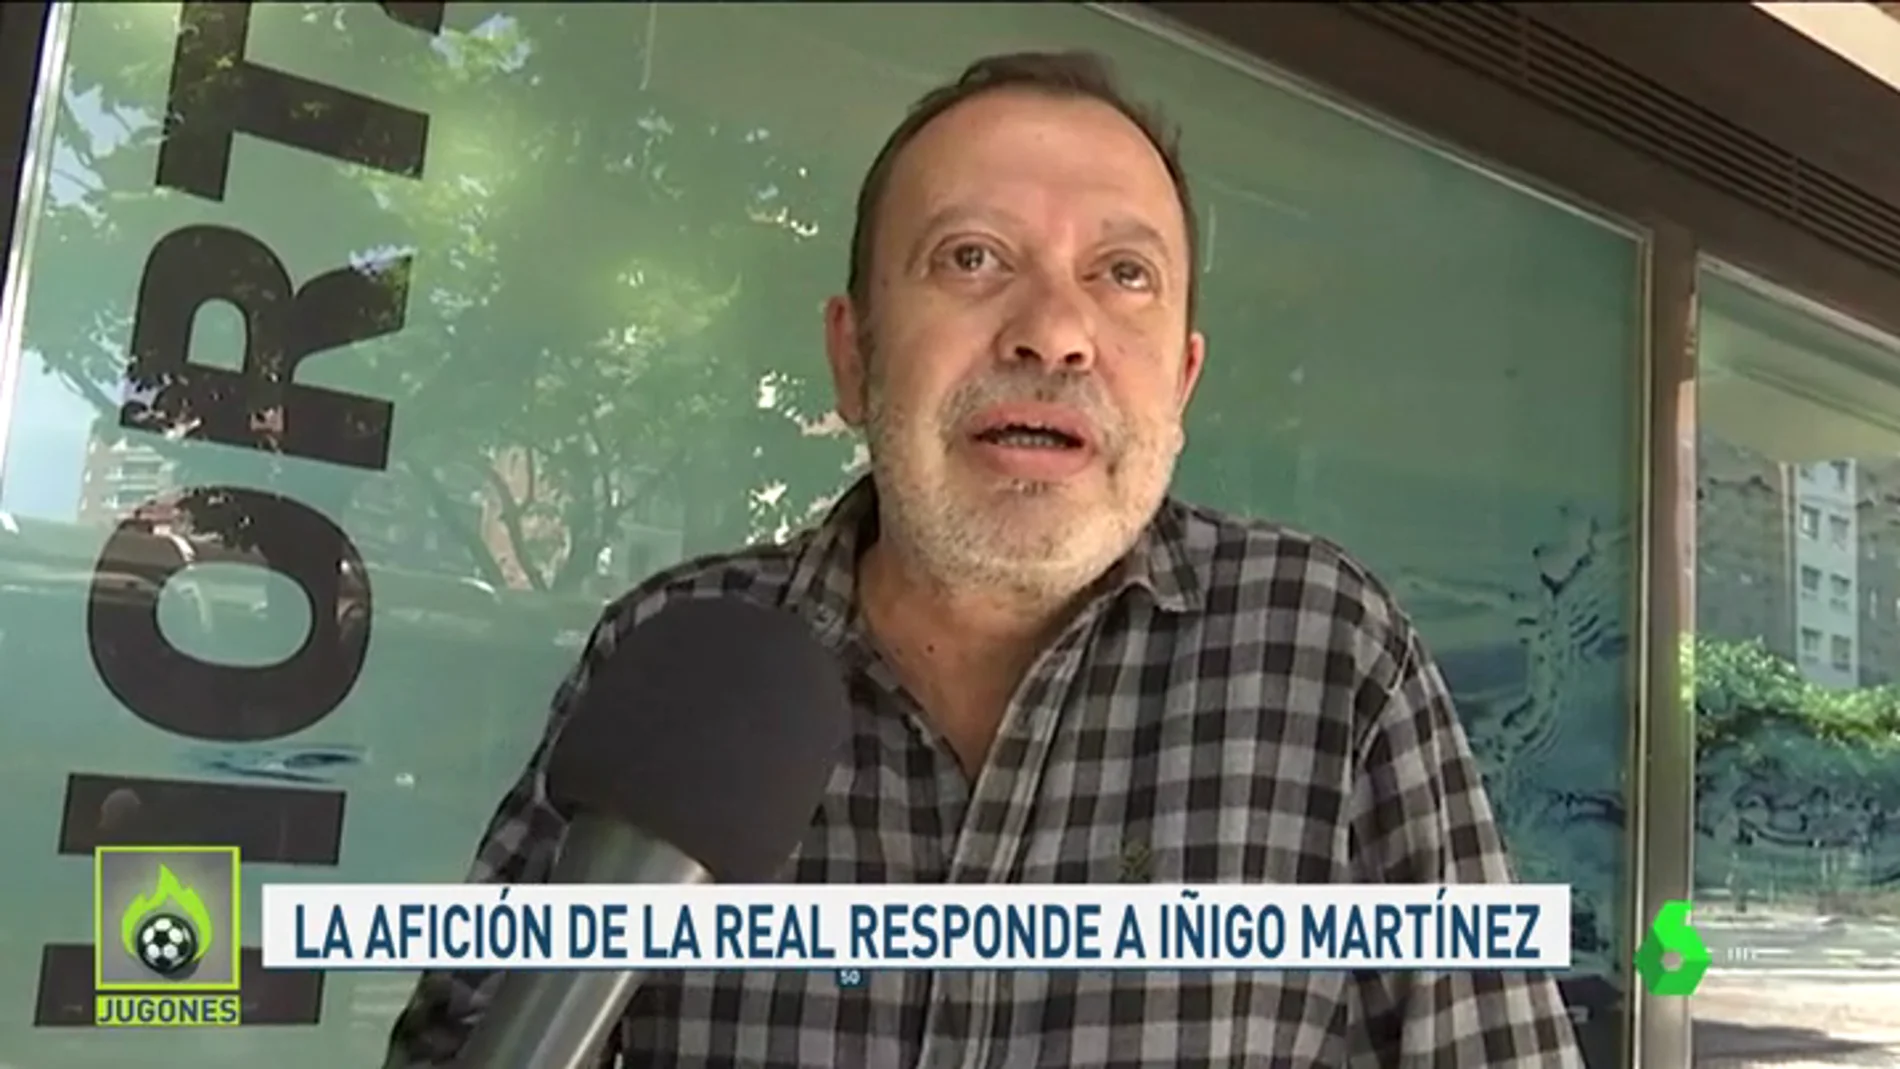 La afición de la Real Sociedad, indignada con las declaraciones de Íñigo Martínez: "Será sinvergüenza"